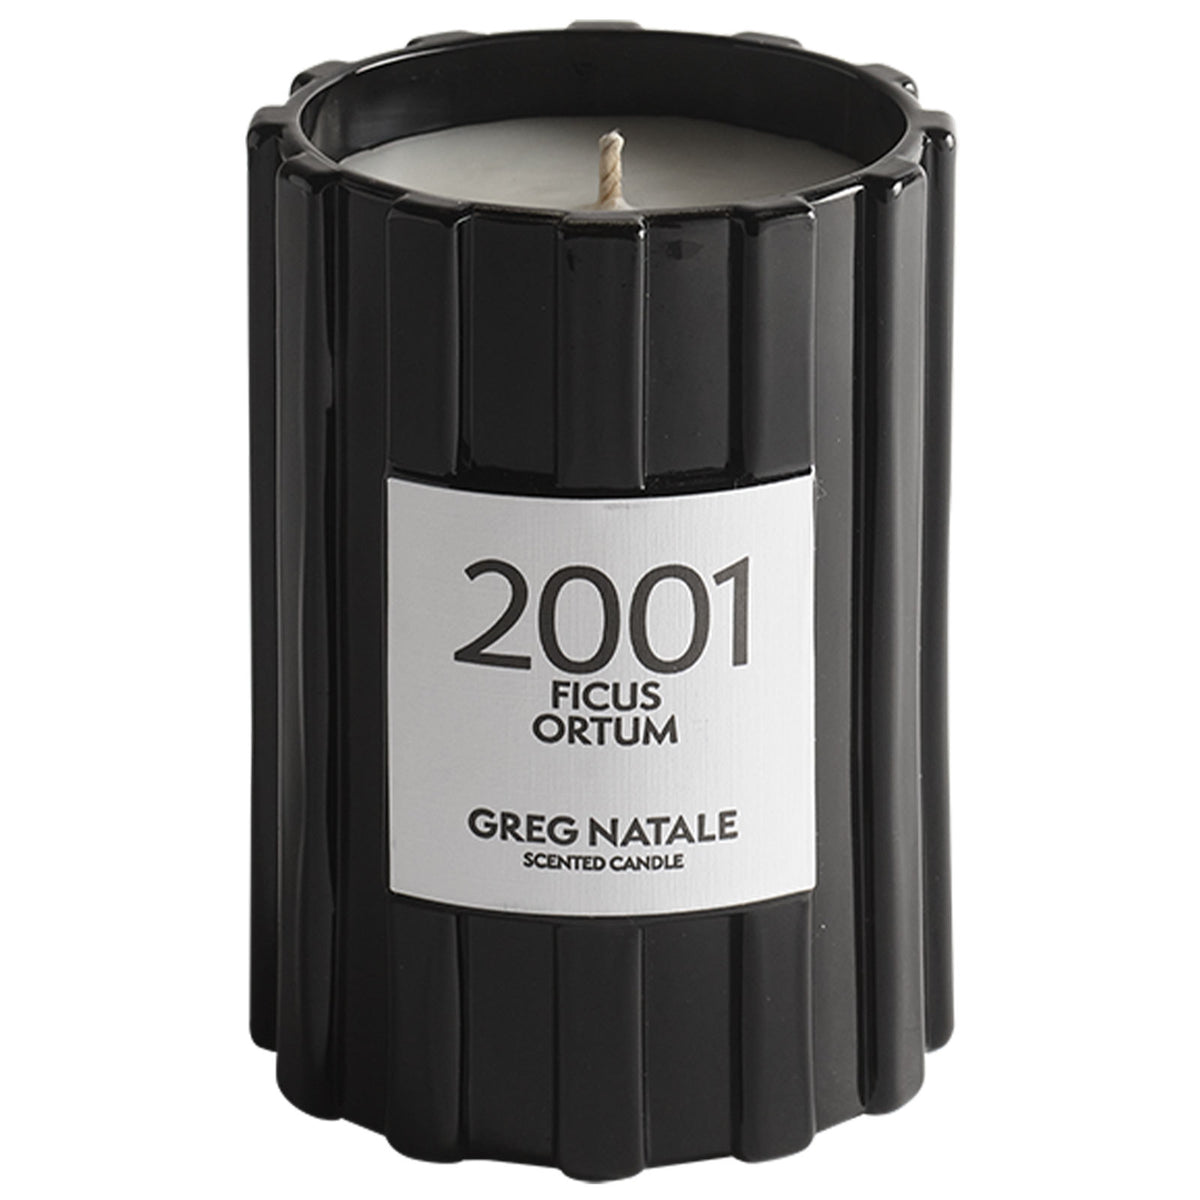 2001 Ficus Ortum Candle